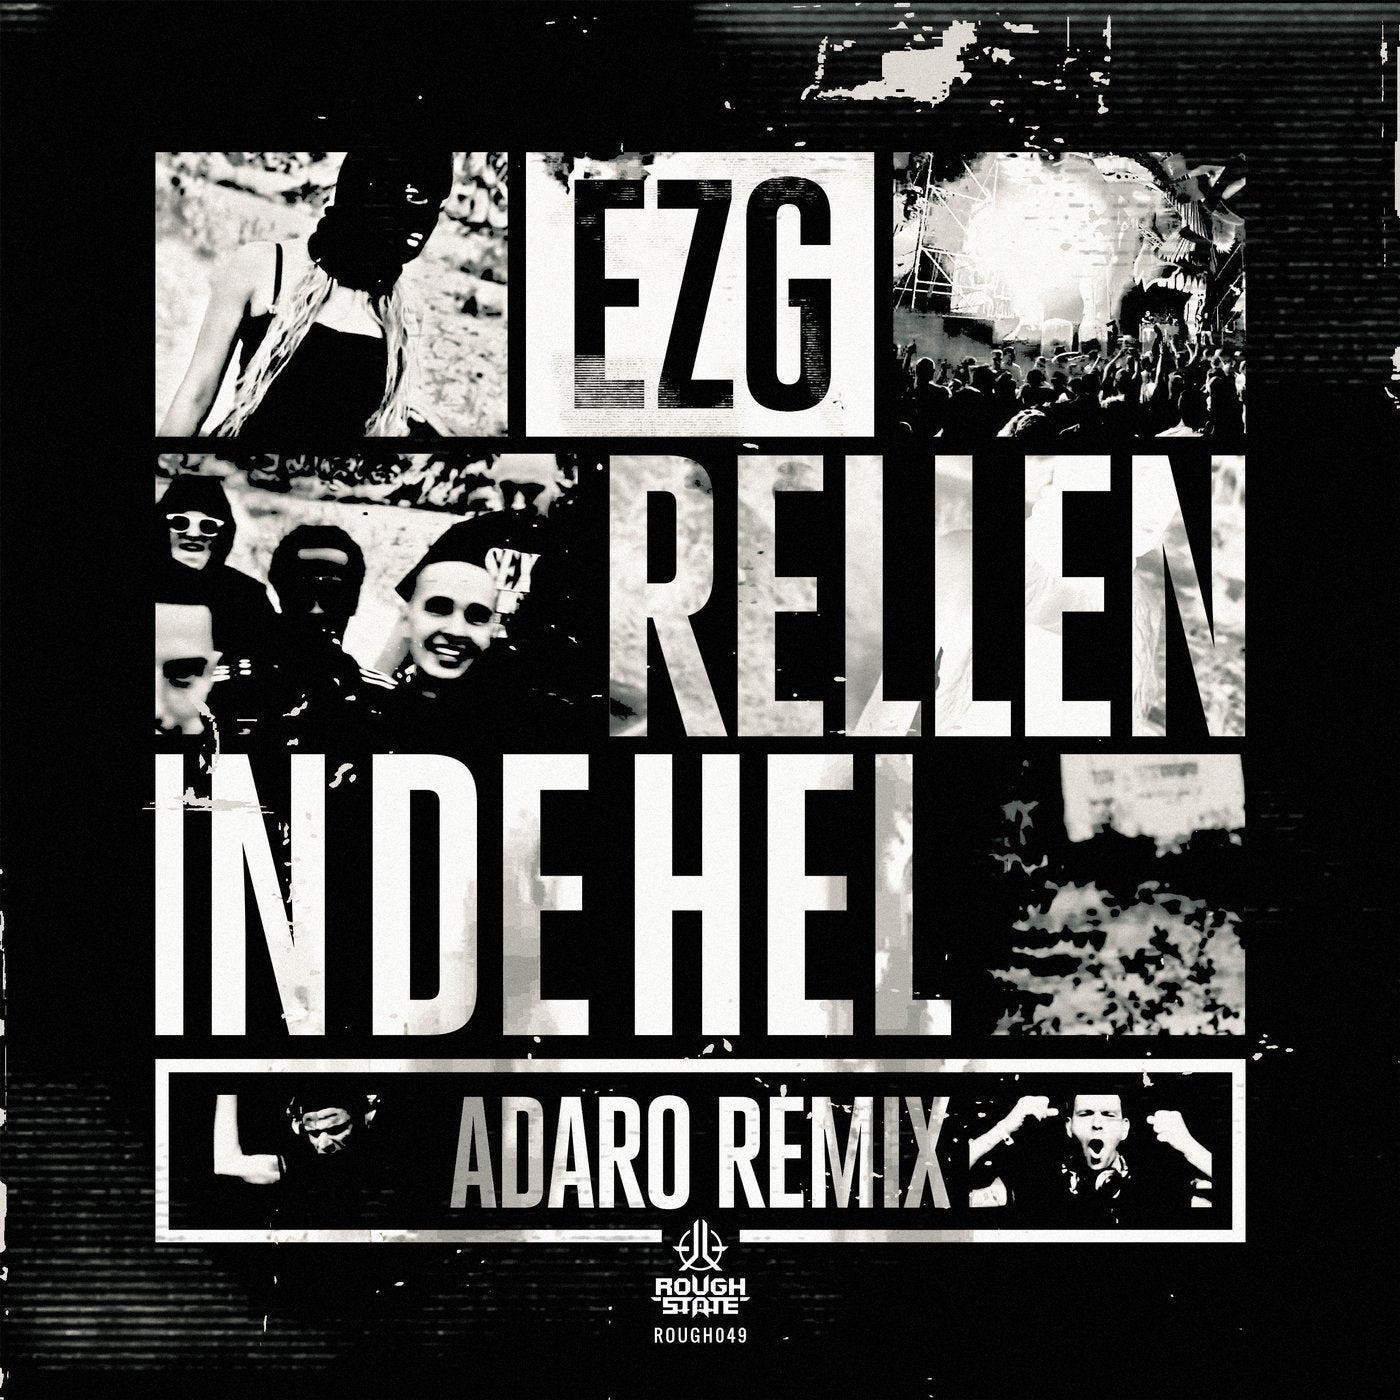 Rellen In De Hel - Adaro Remix